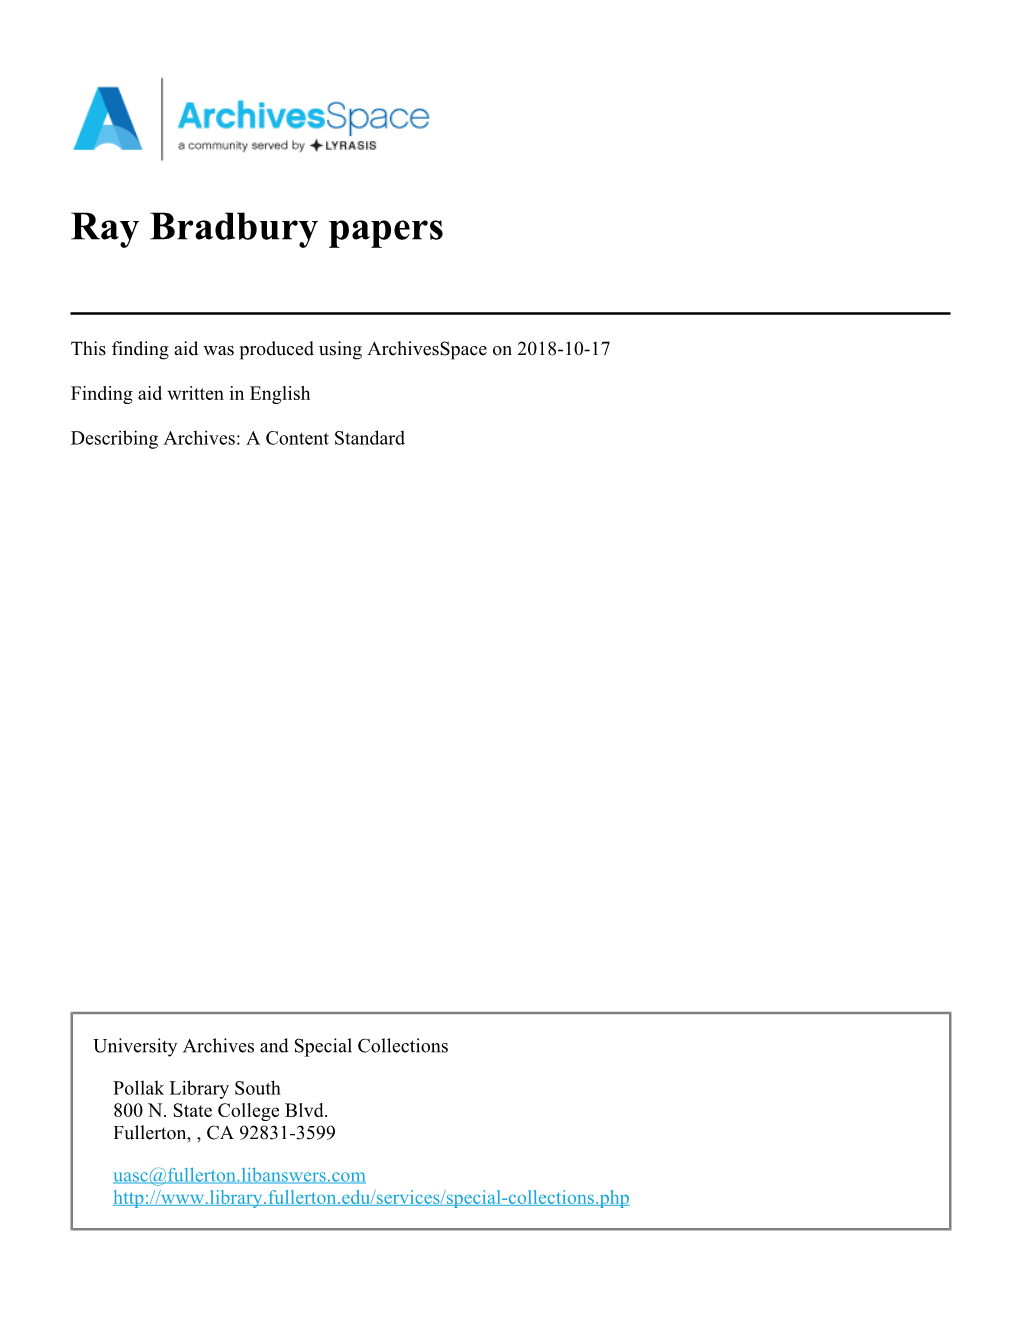 Ray Bradbury Papers